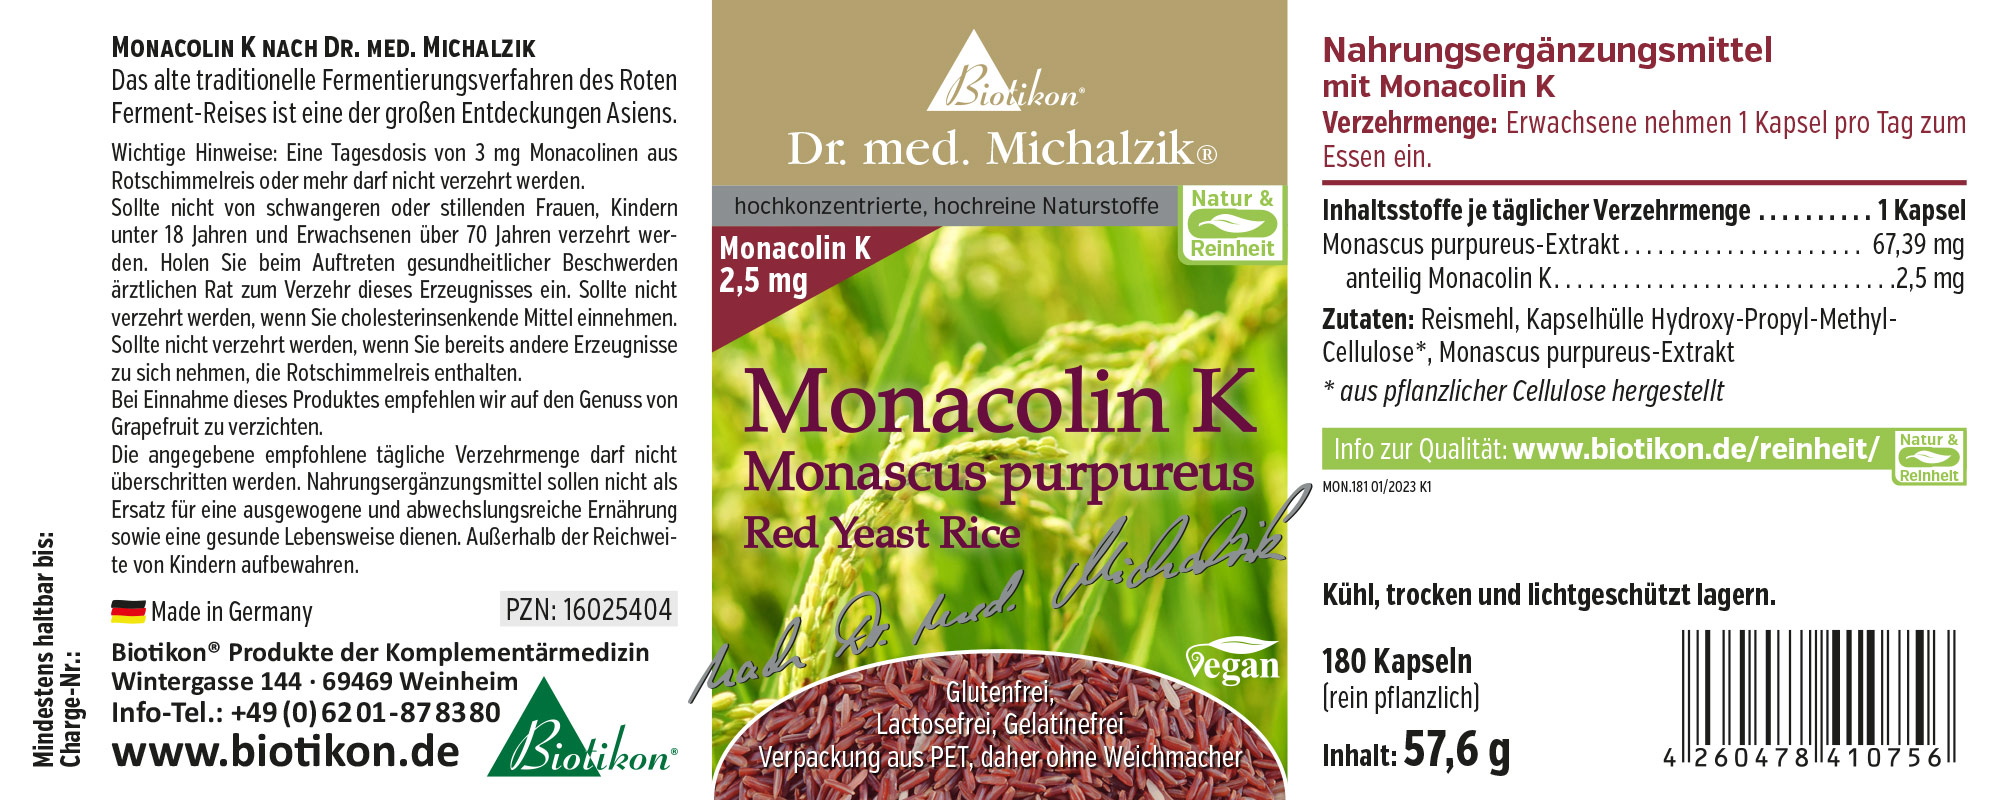 Monacolin K